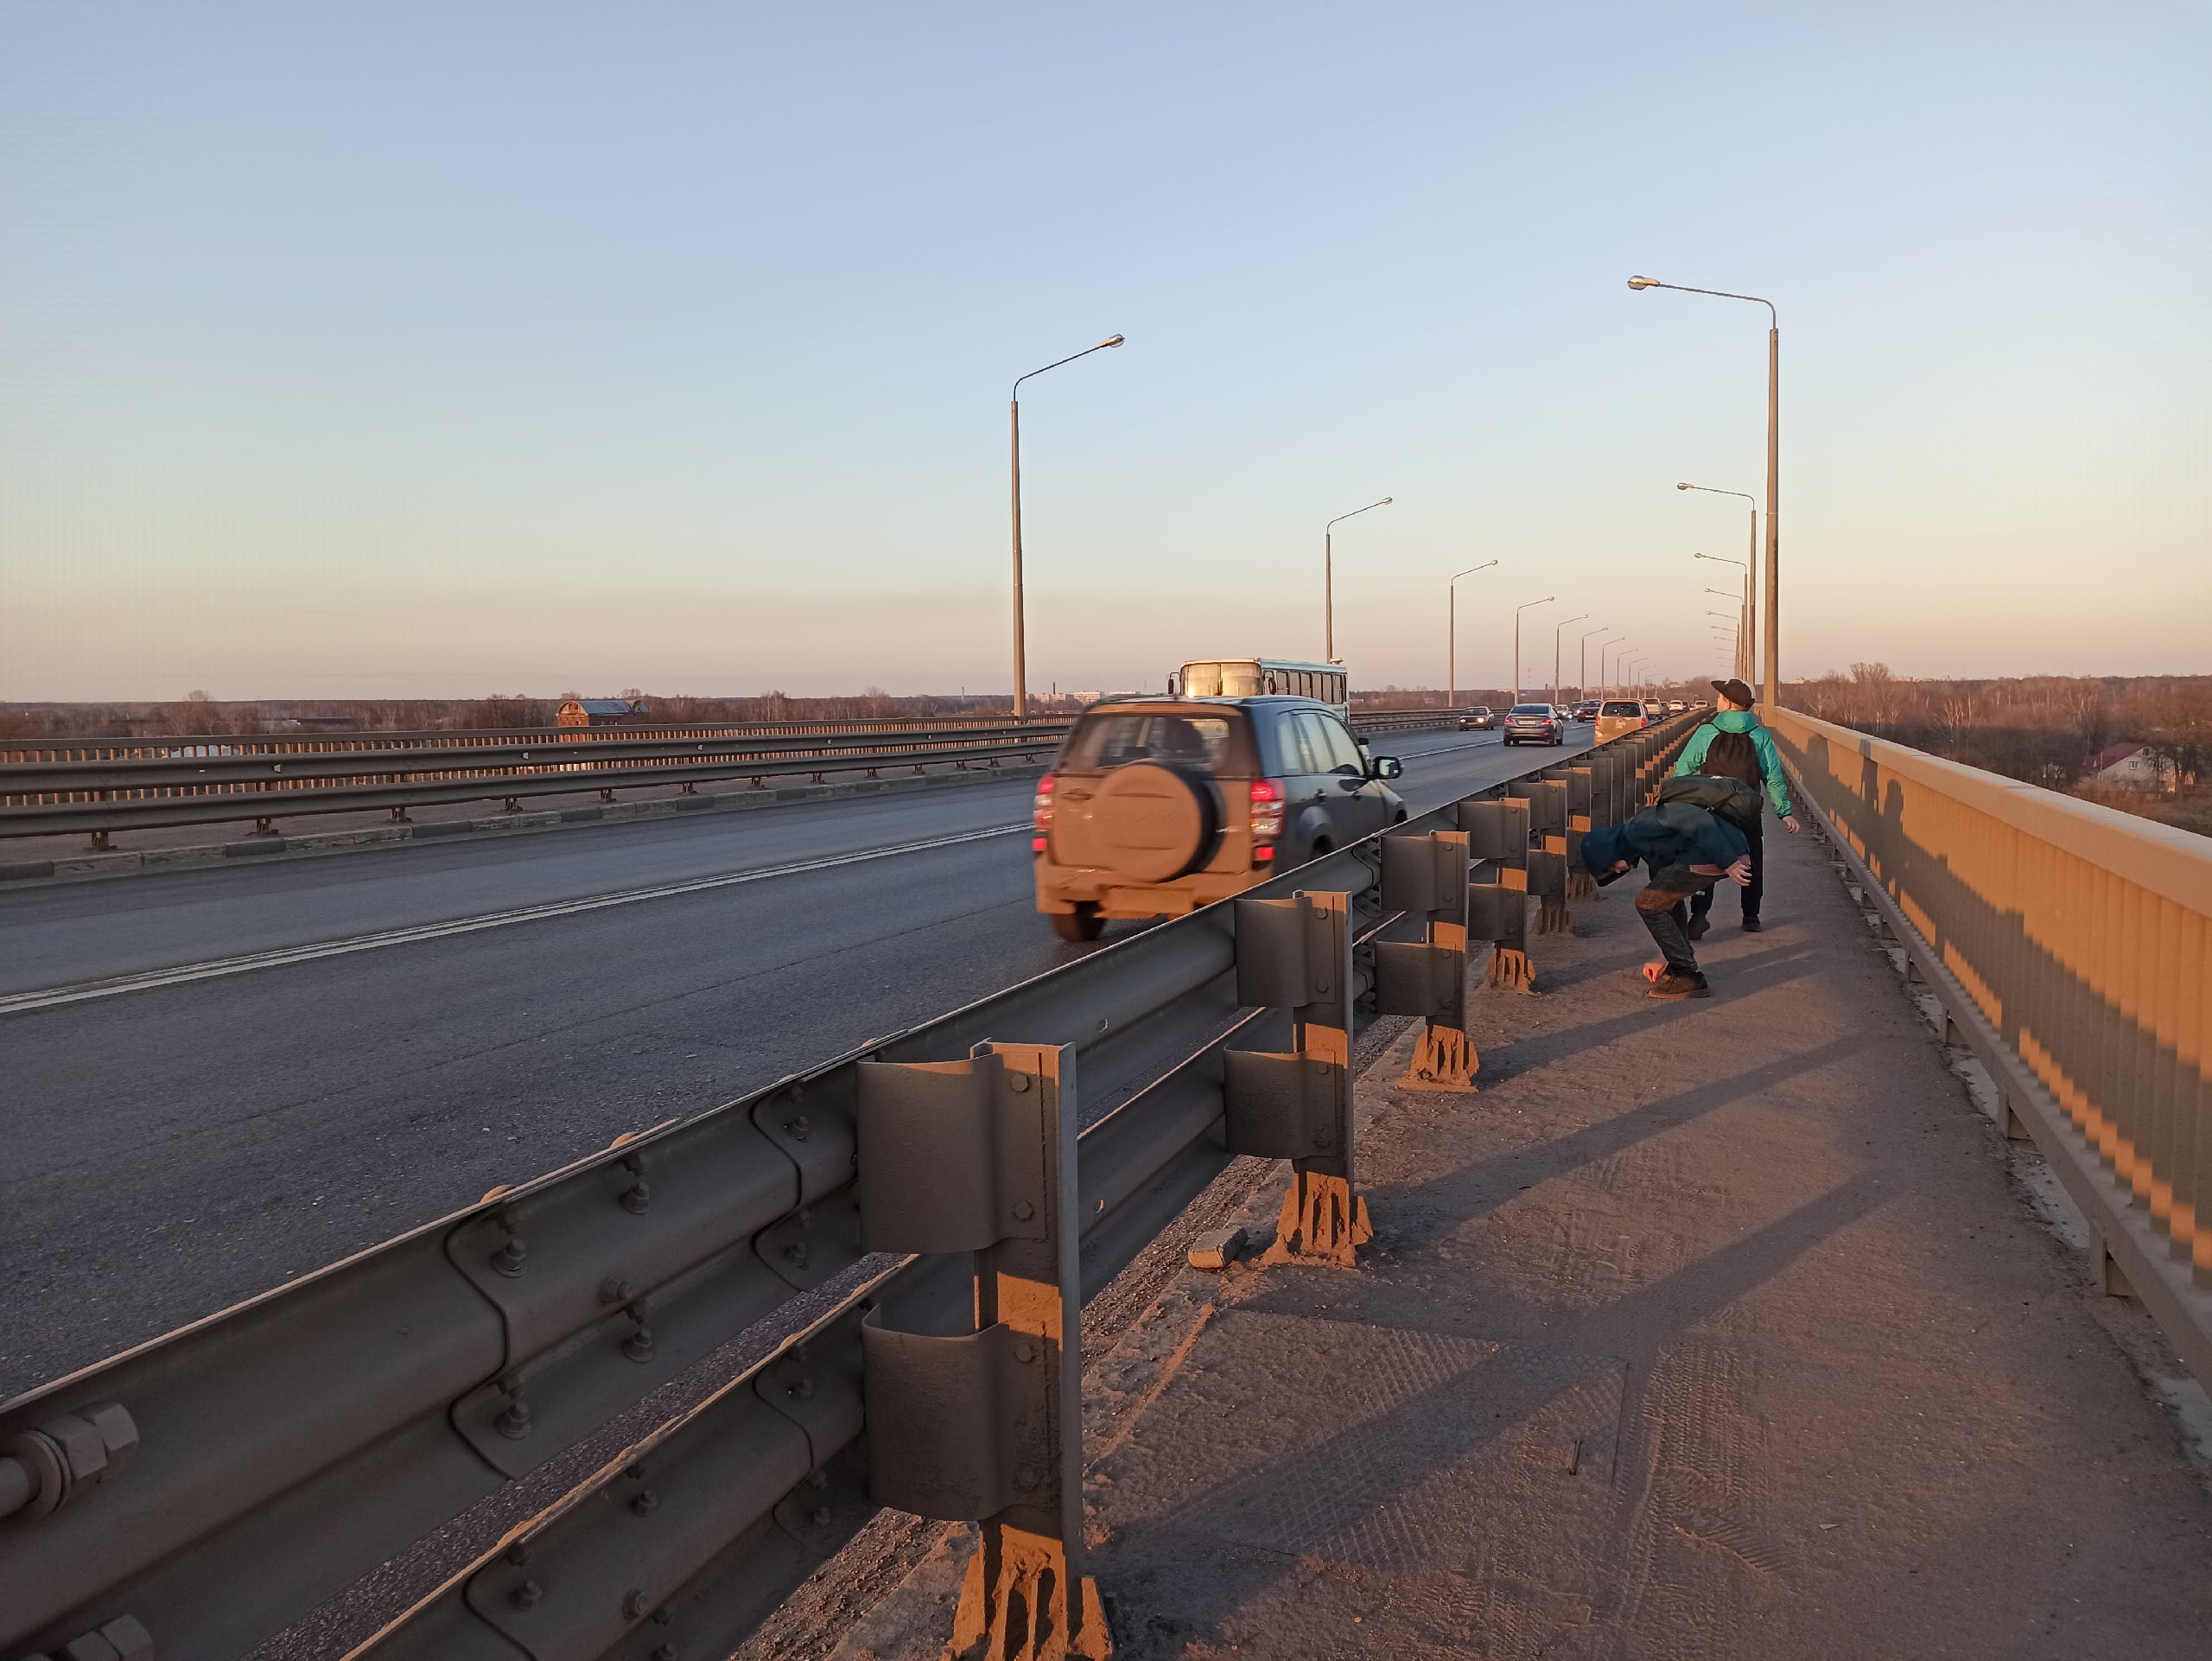 "Там ямы уже!": в Ярославле начинают ремонт Октябрьского моста за 50 миллионов рублей